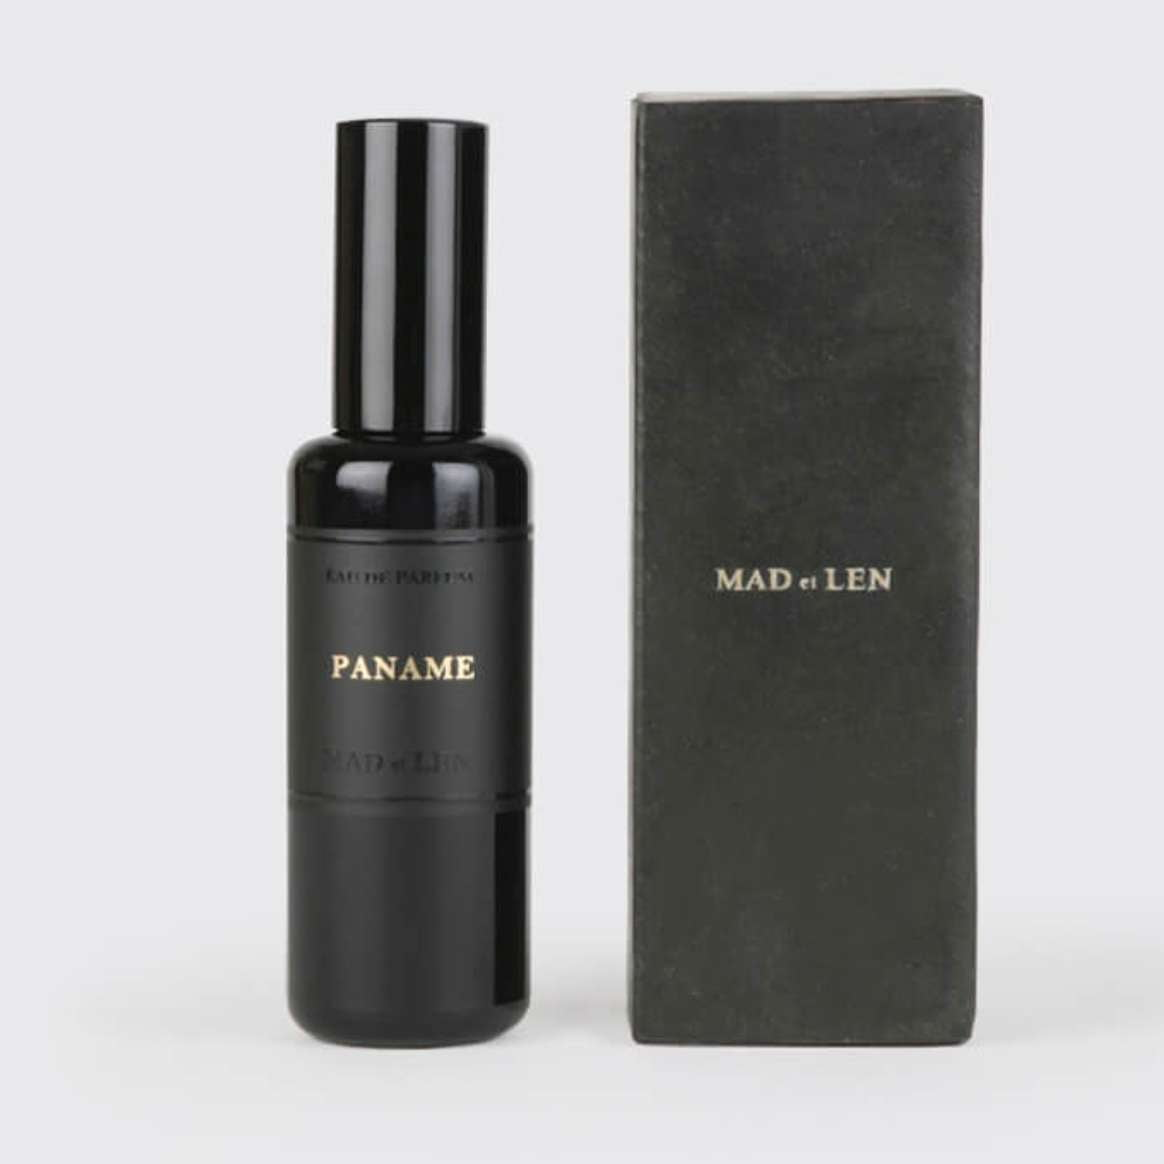 Paname "Paris" - Mad et Len - INDIEHOUSE modern fragrances